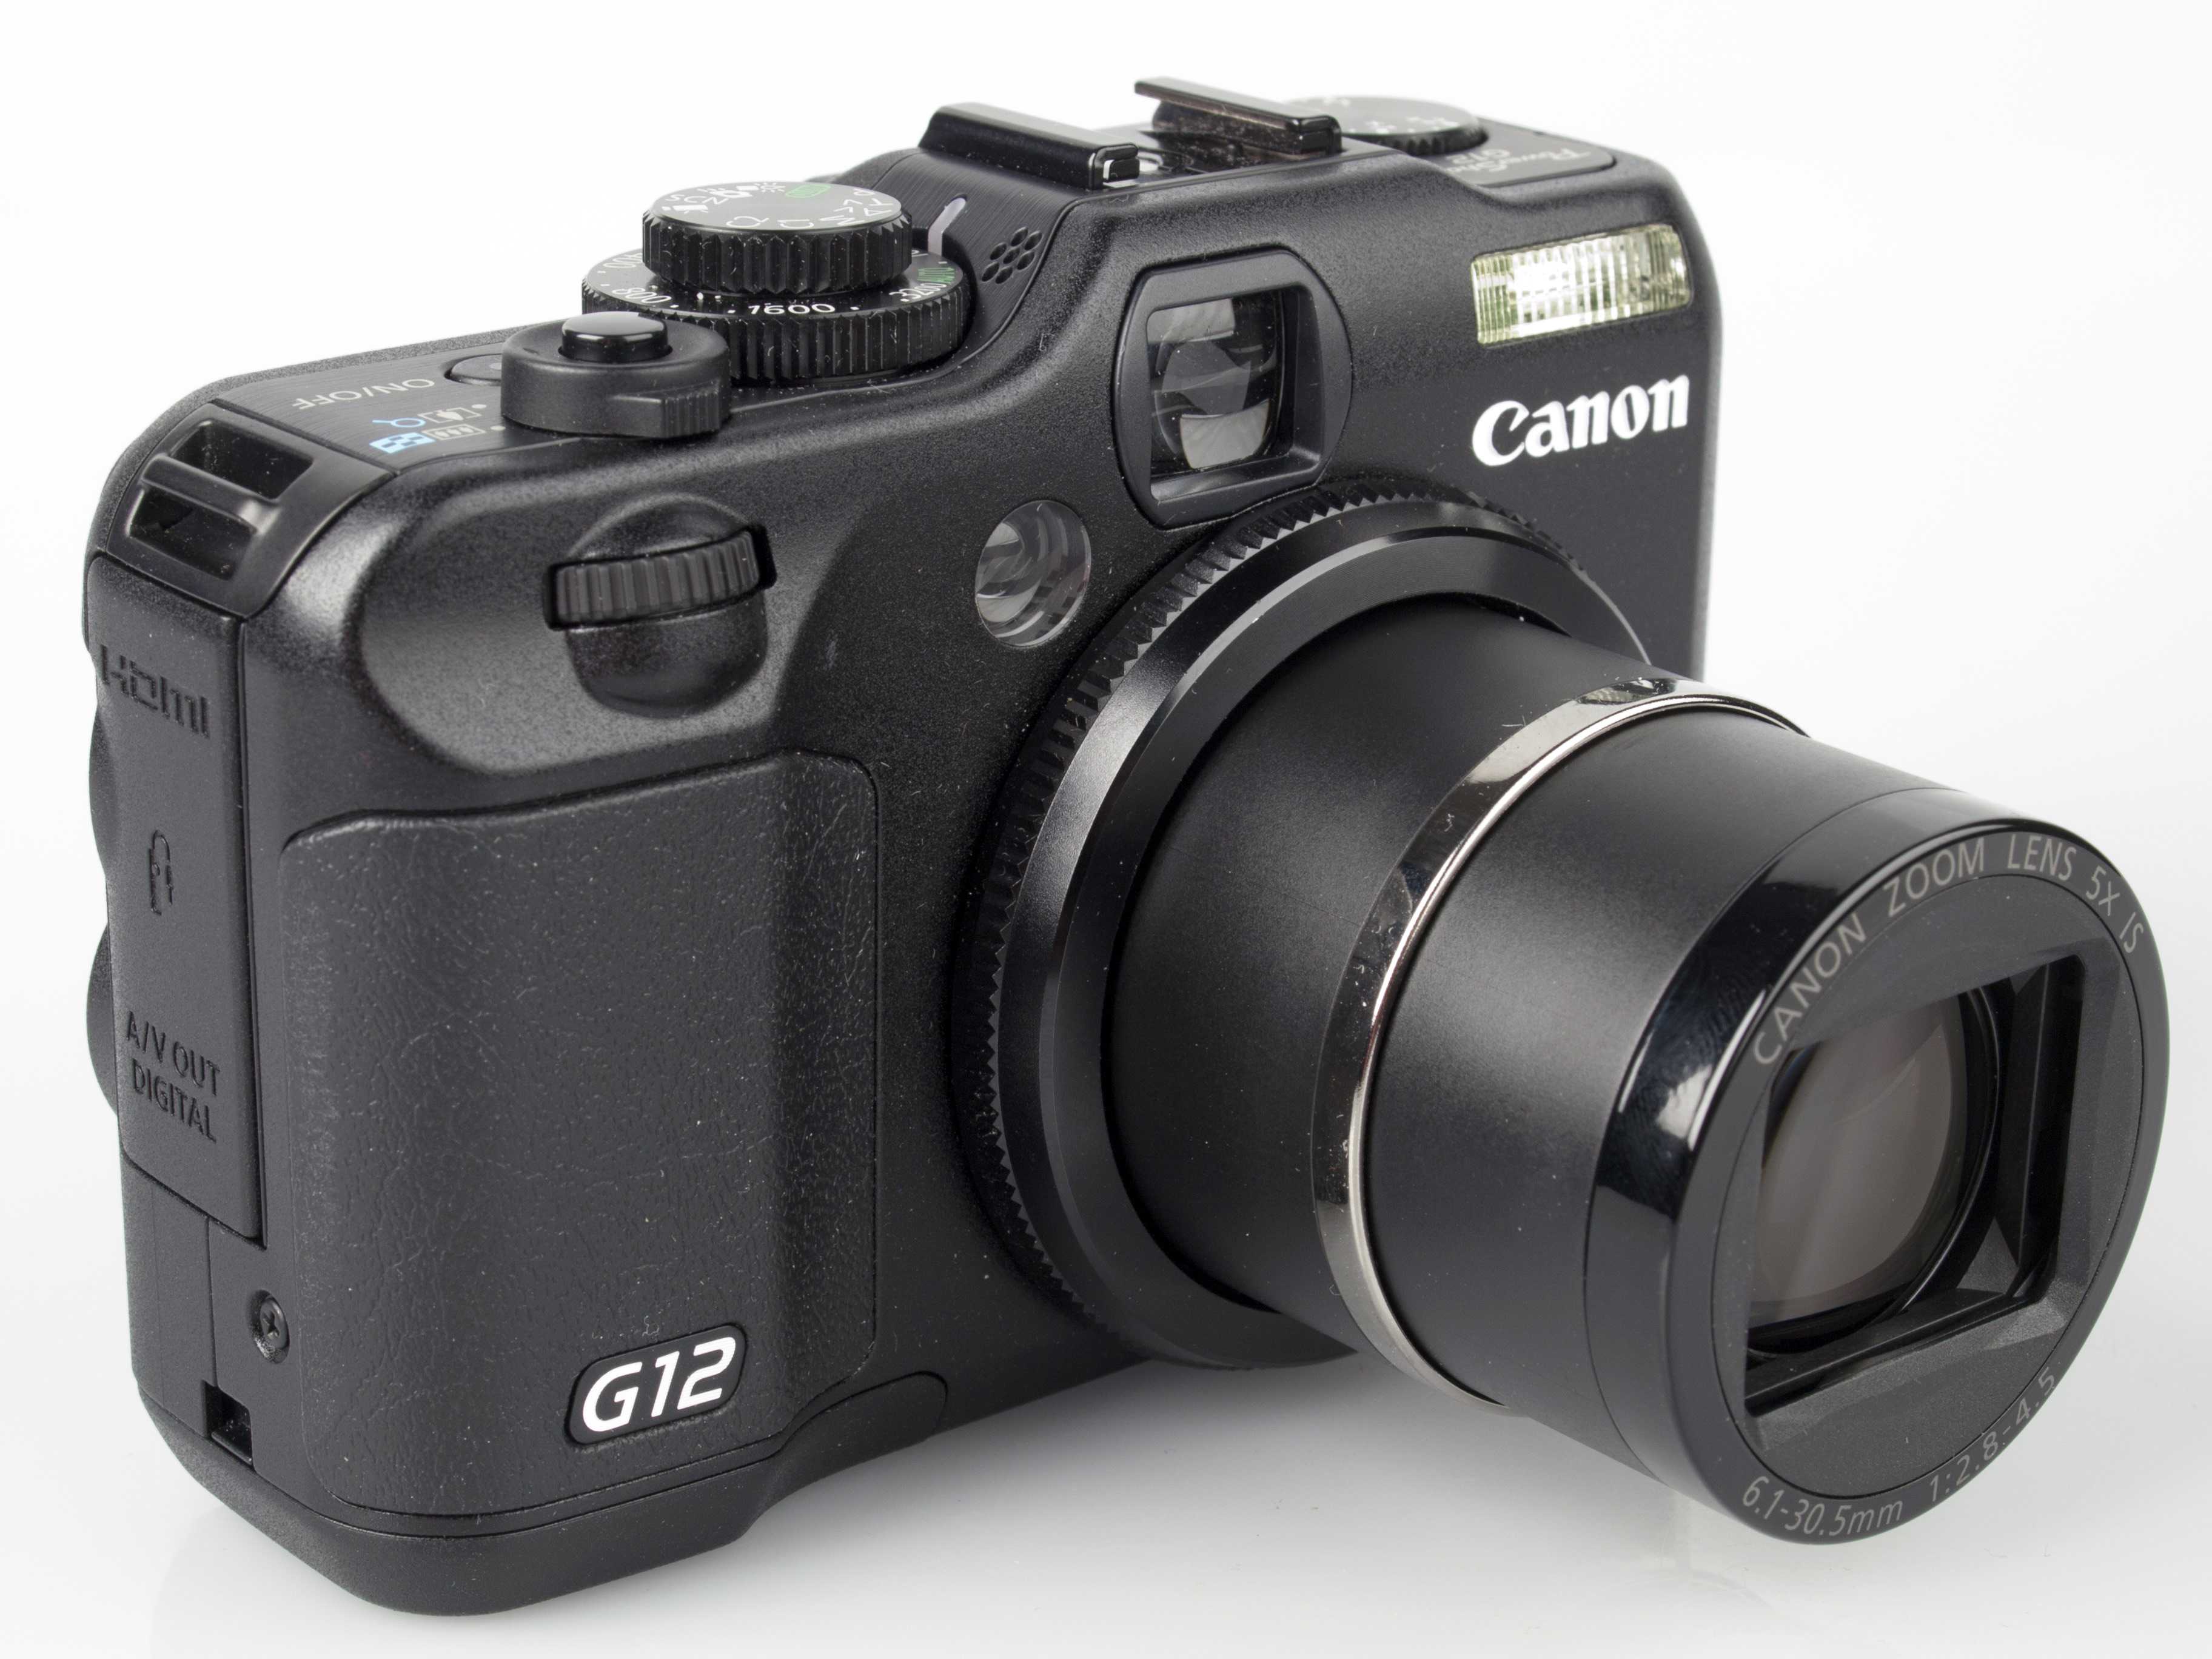 Canon powershot g12 купить по акционной цене , отзывы и обзоры.